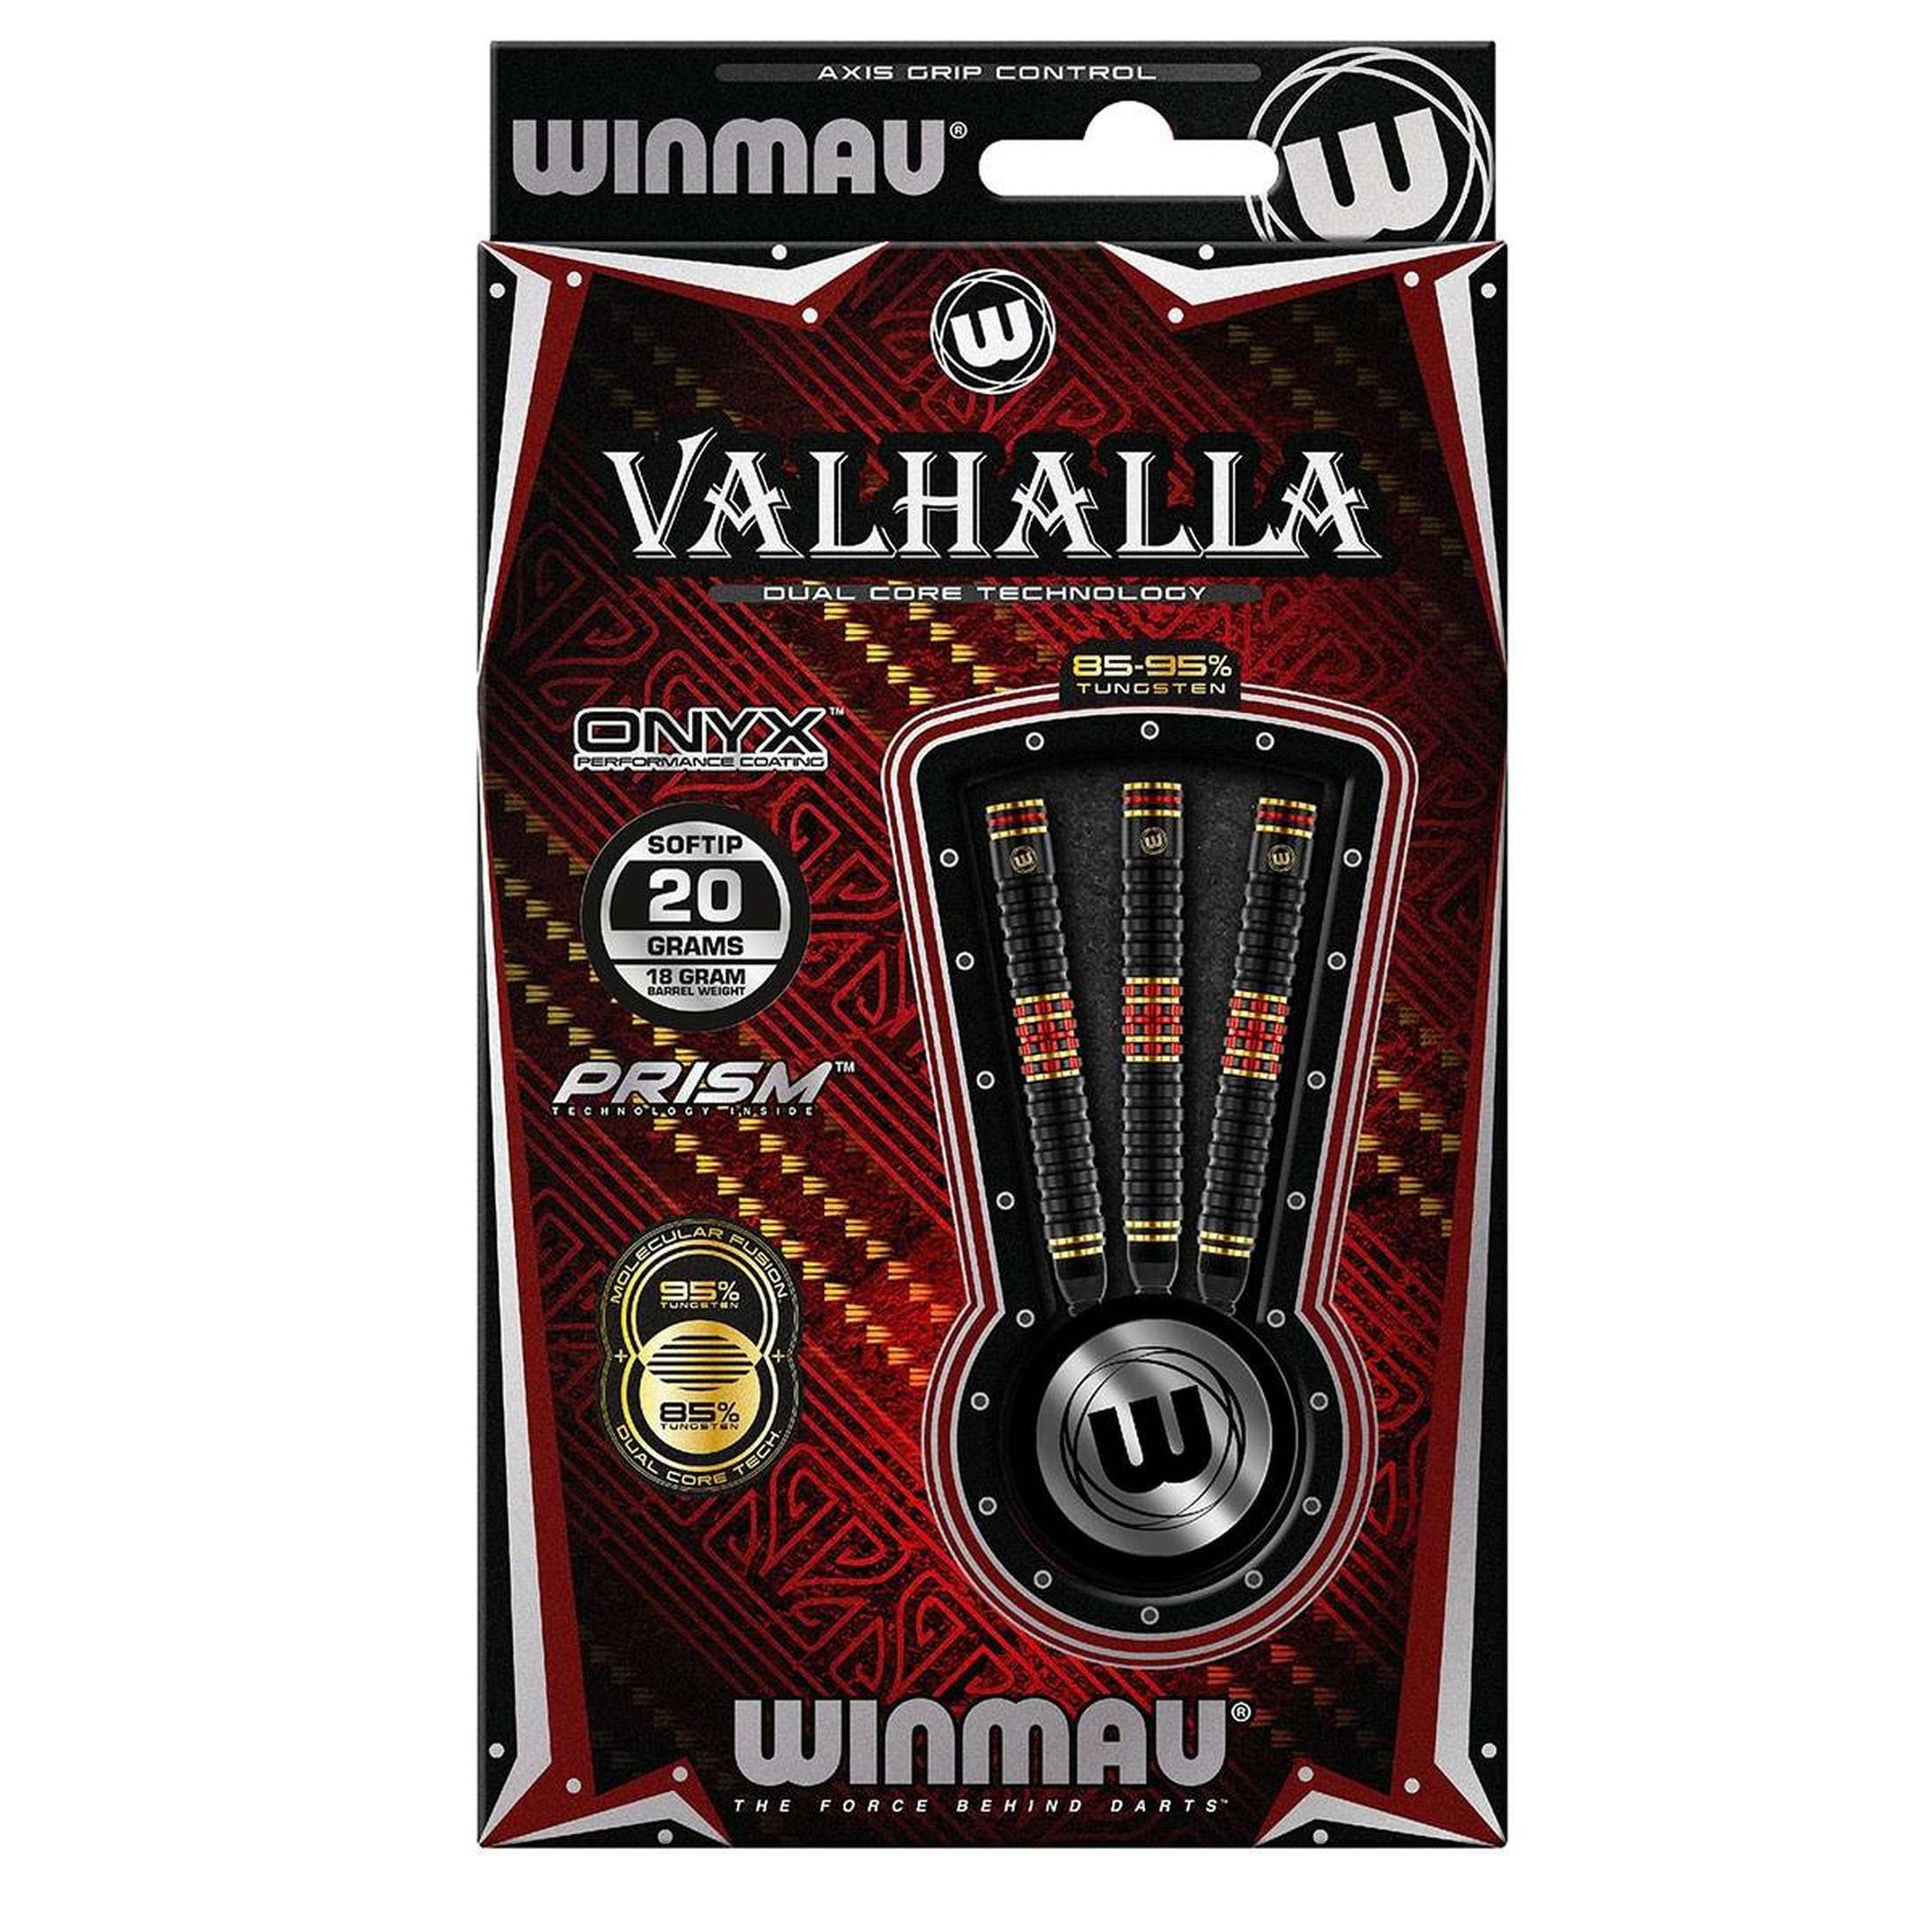 Winmau Valhalla 95% Tungsten/85% Tungsten 20 Gramm Softdarts-3